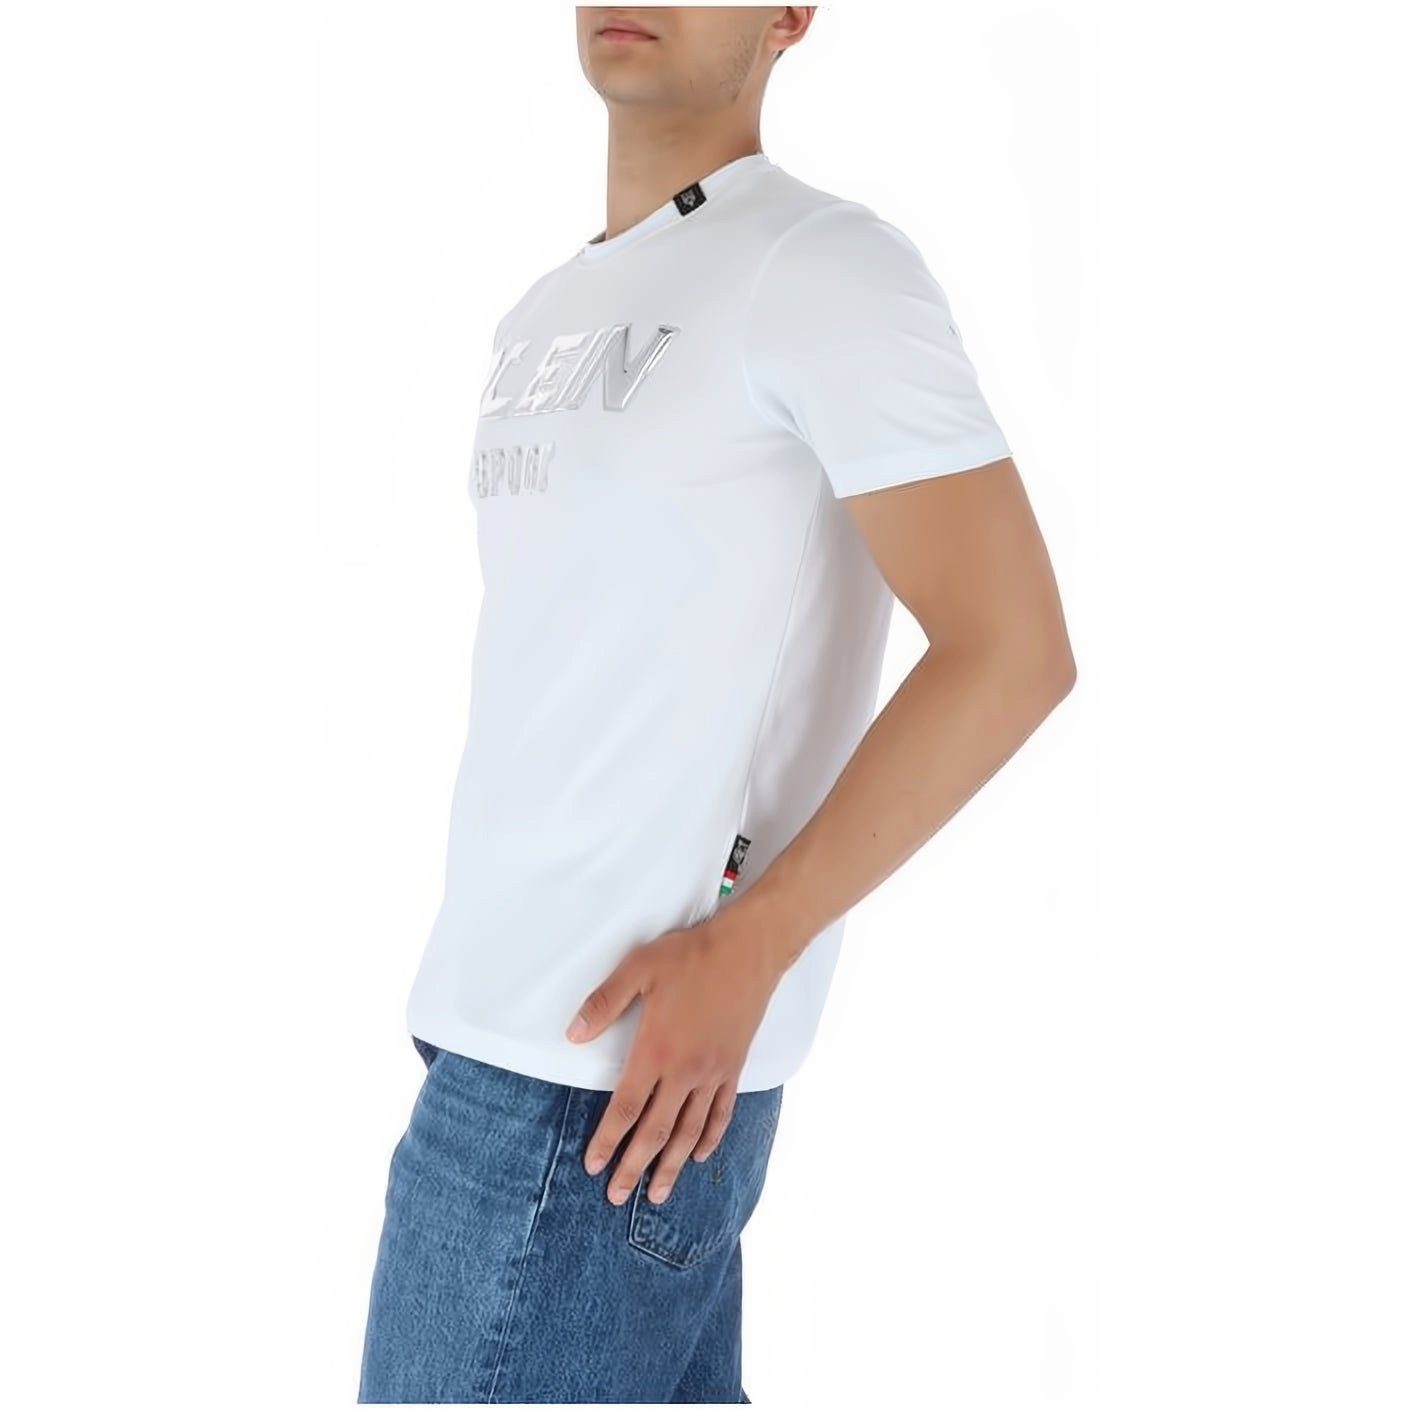 Stylischer ROUND vielfältige Tragekomfort, Farbauswahl PLEIN T-Shirt hoher SPORT Look, NECK